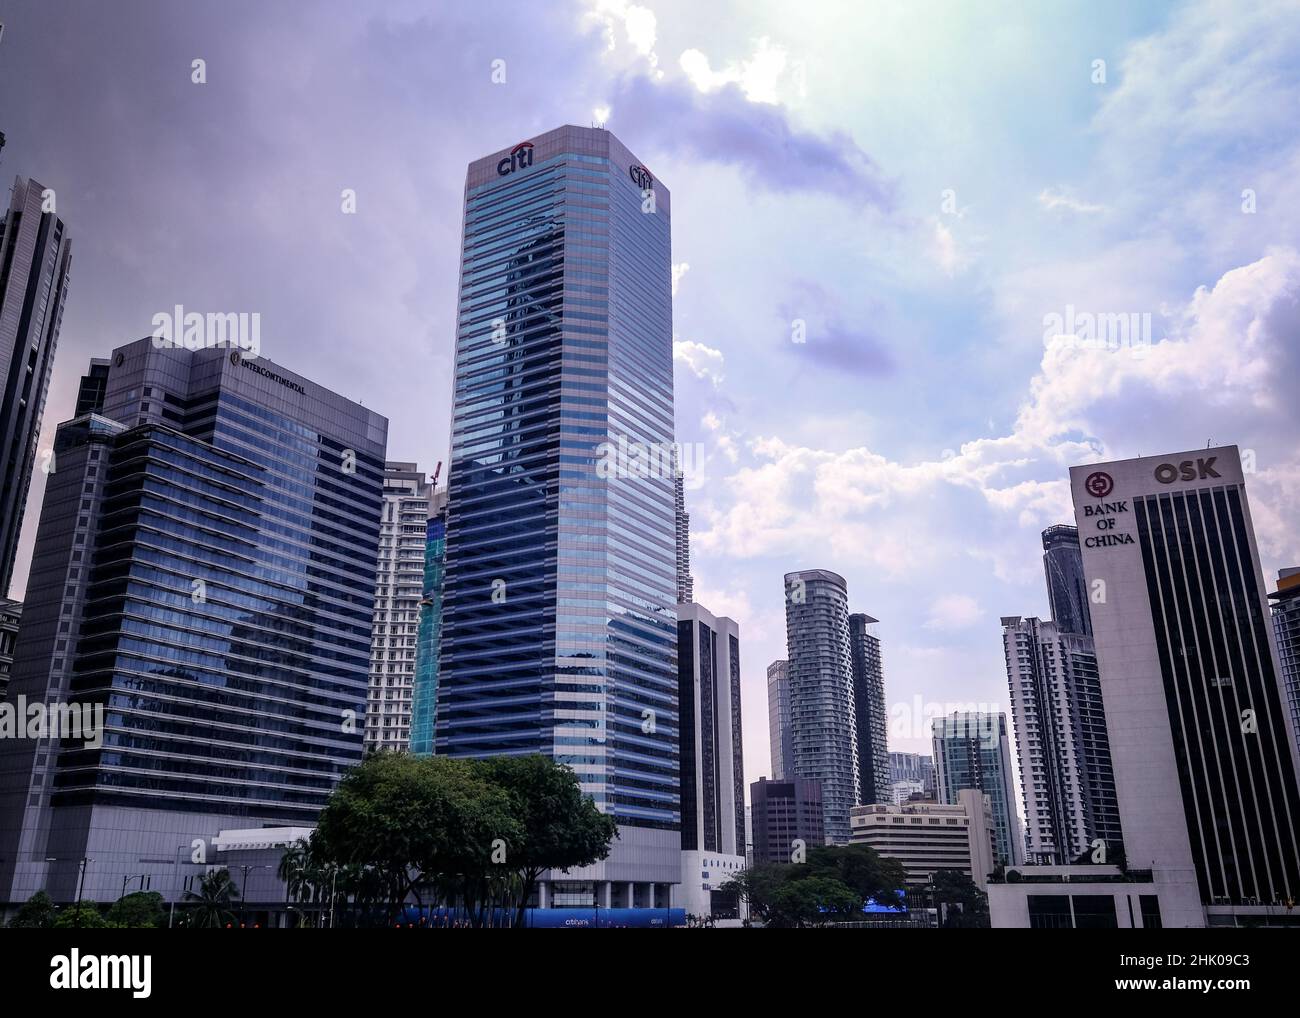 Kuala Lumpur, Malaisie - janvier 2022 : immeubles financiers de Kuala Lumpur incluant la Banque Citi et le bâtiment de la Banque de Chine Banque D'Images